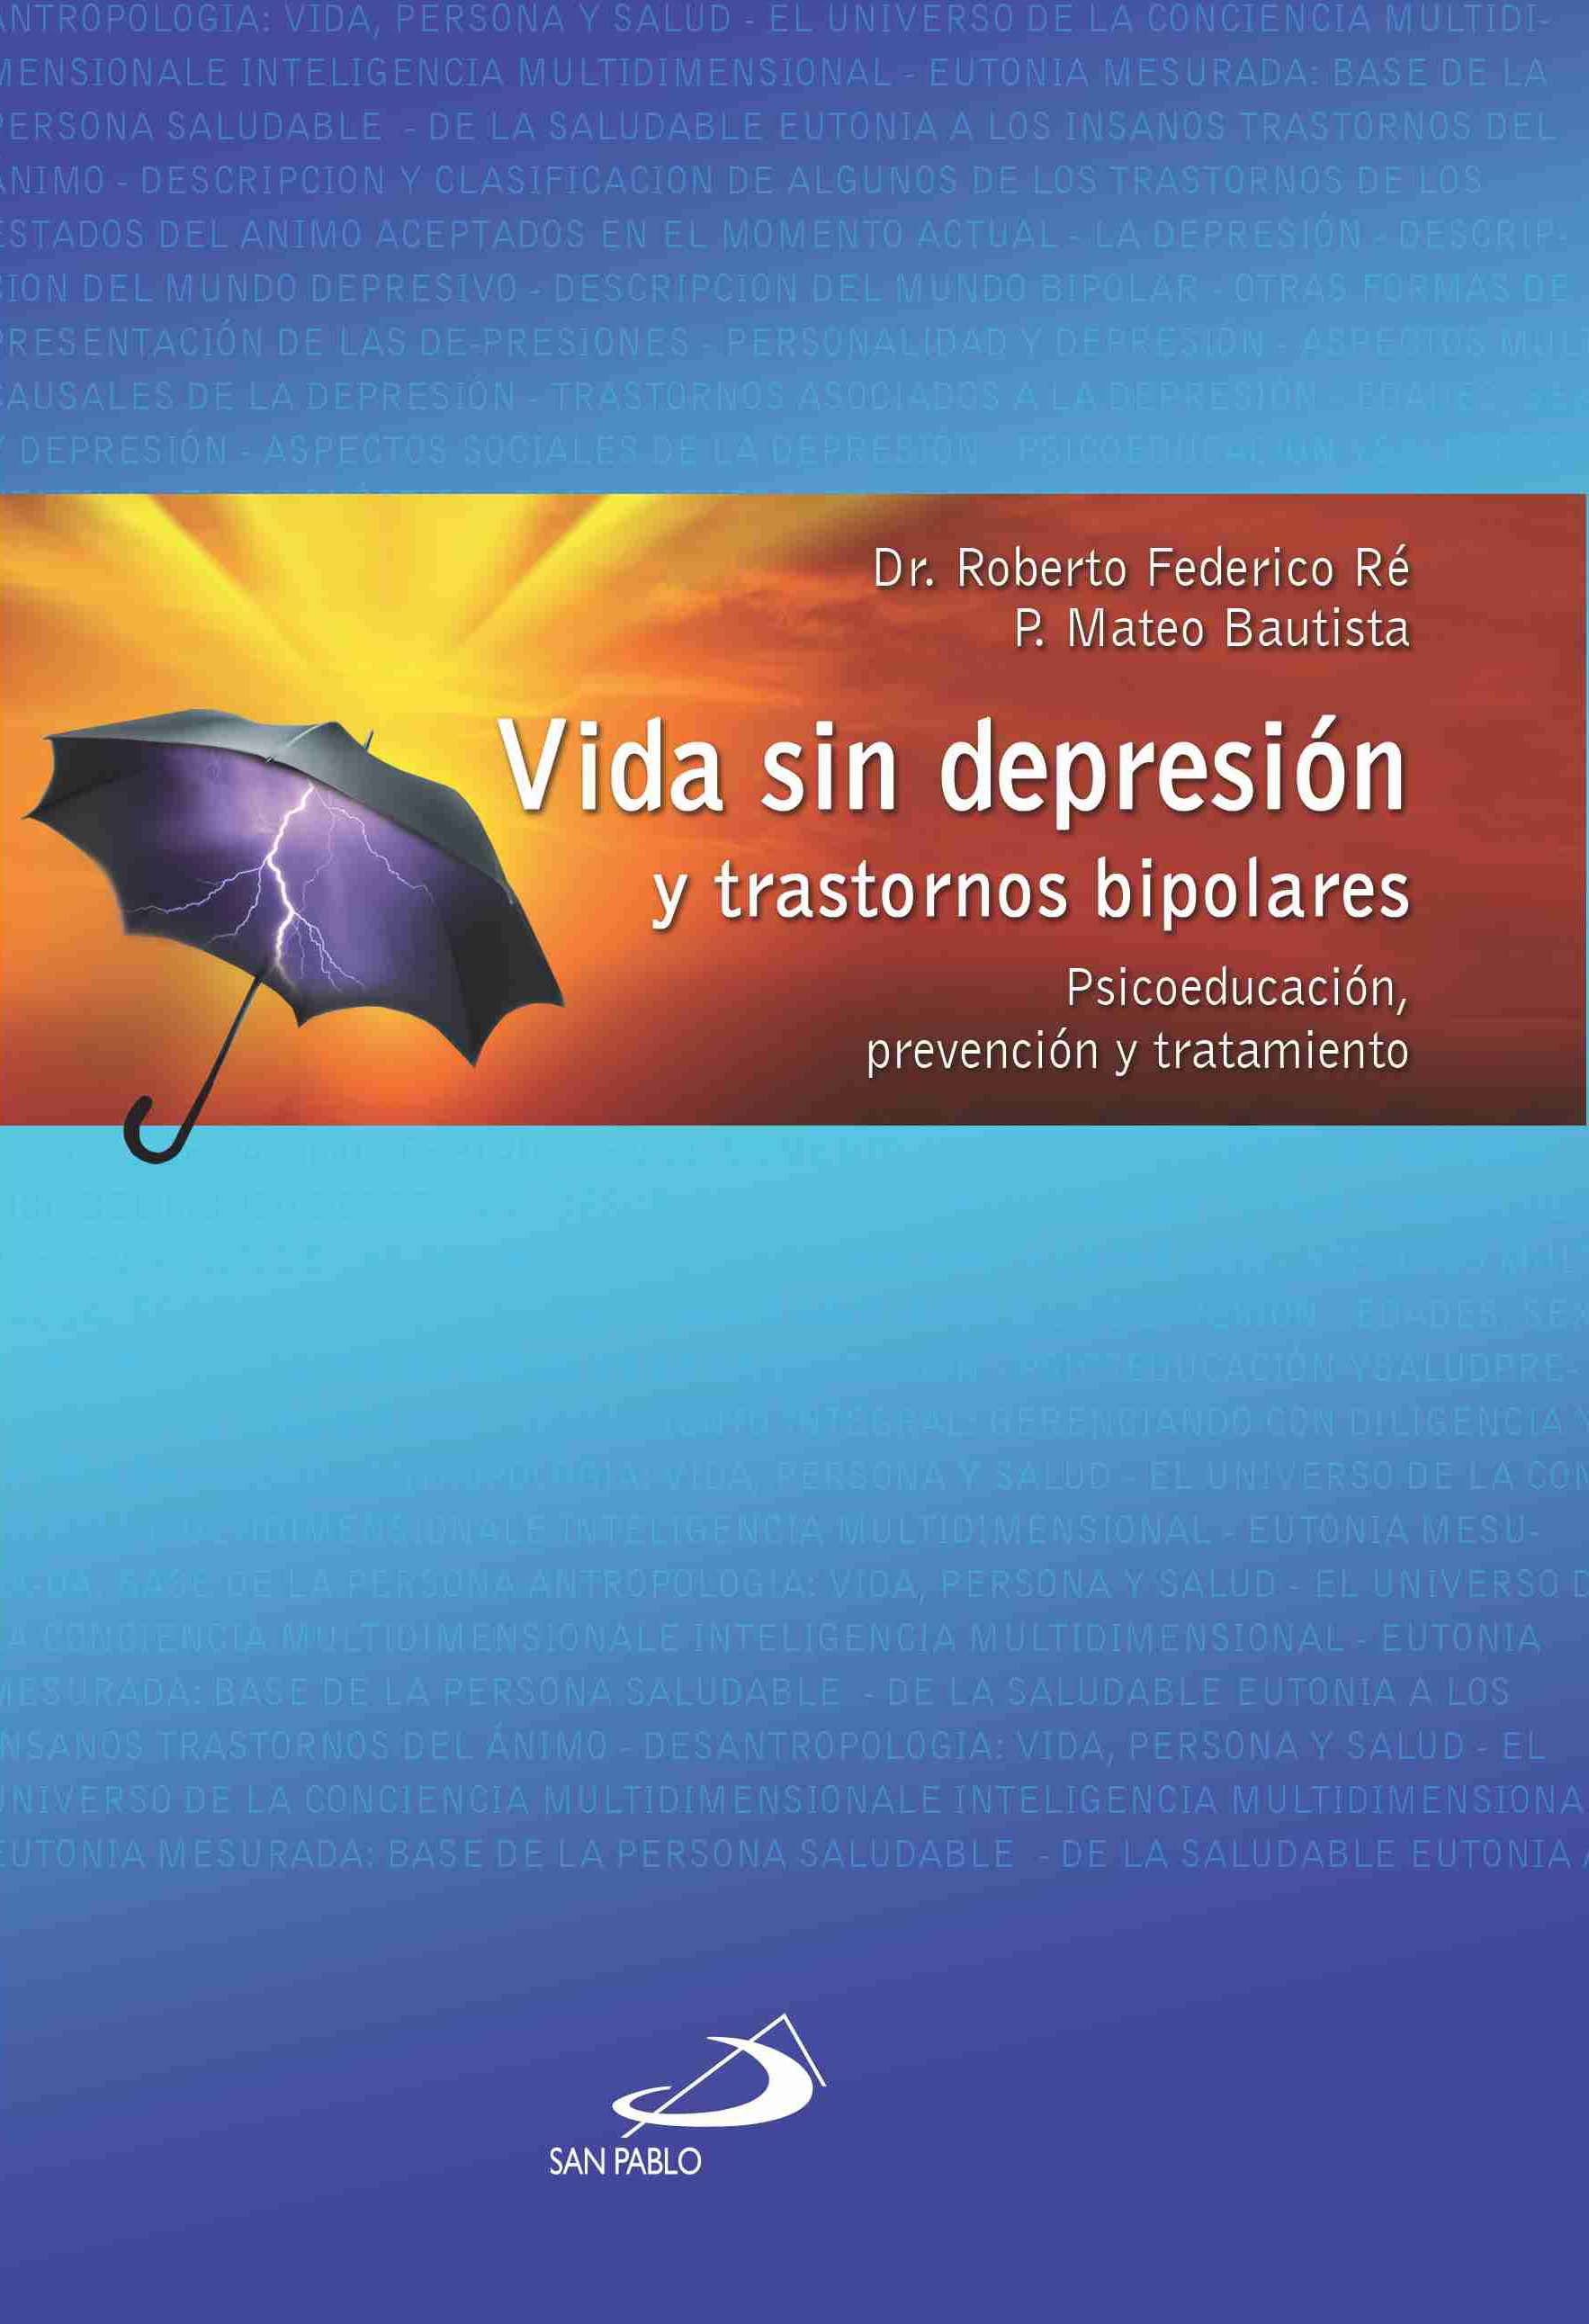 VIDA SIN DEPRESIÓN Y TRASTORNOS BIPOLARES, Libreria Virtual SAN PABLO